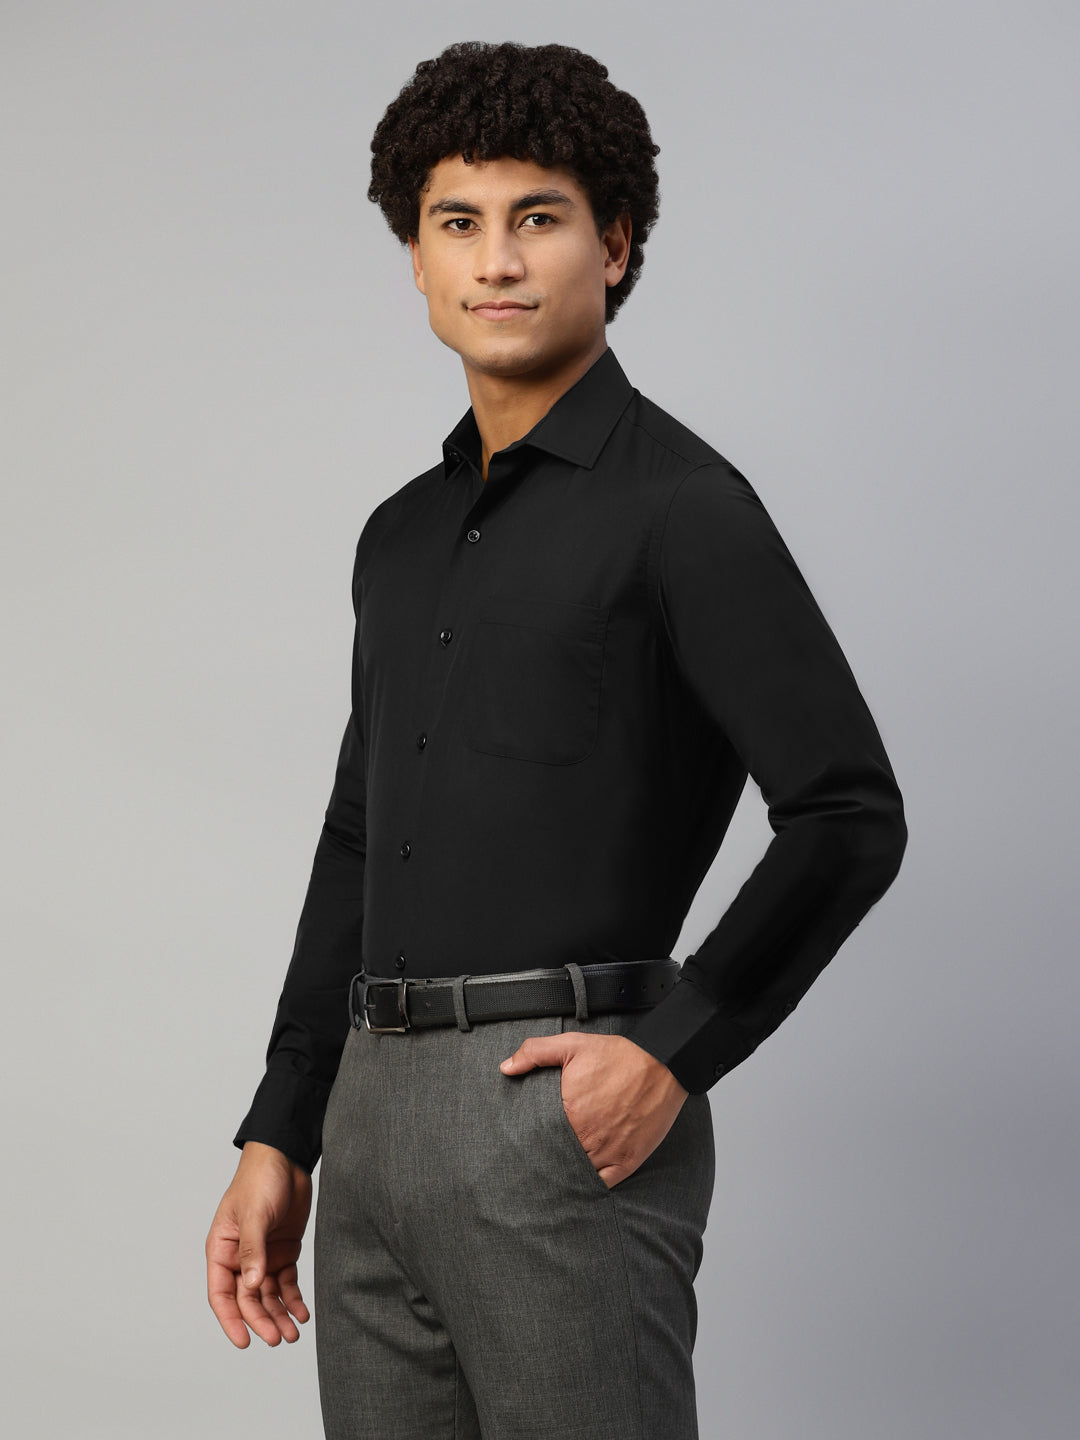 Don Vino Men's Solid Black Full Sleeve Regular Fit Shirt